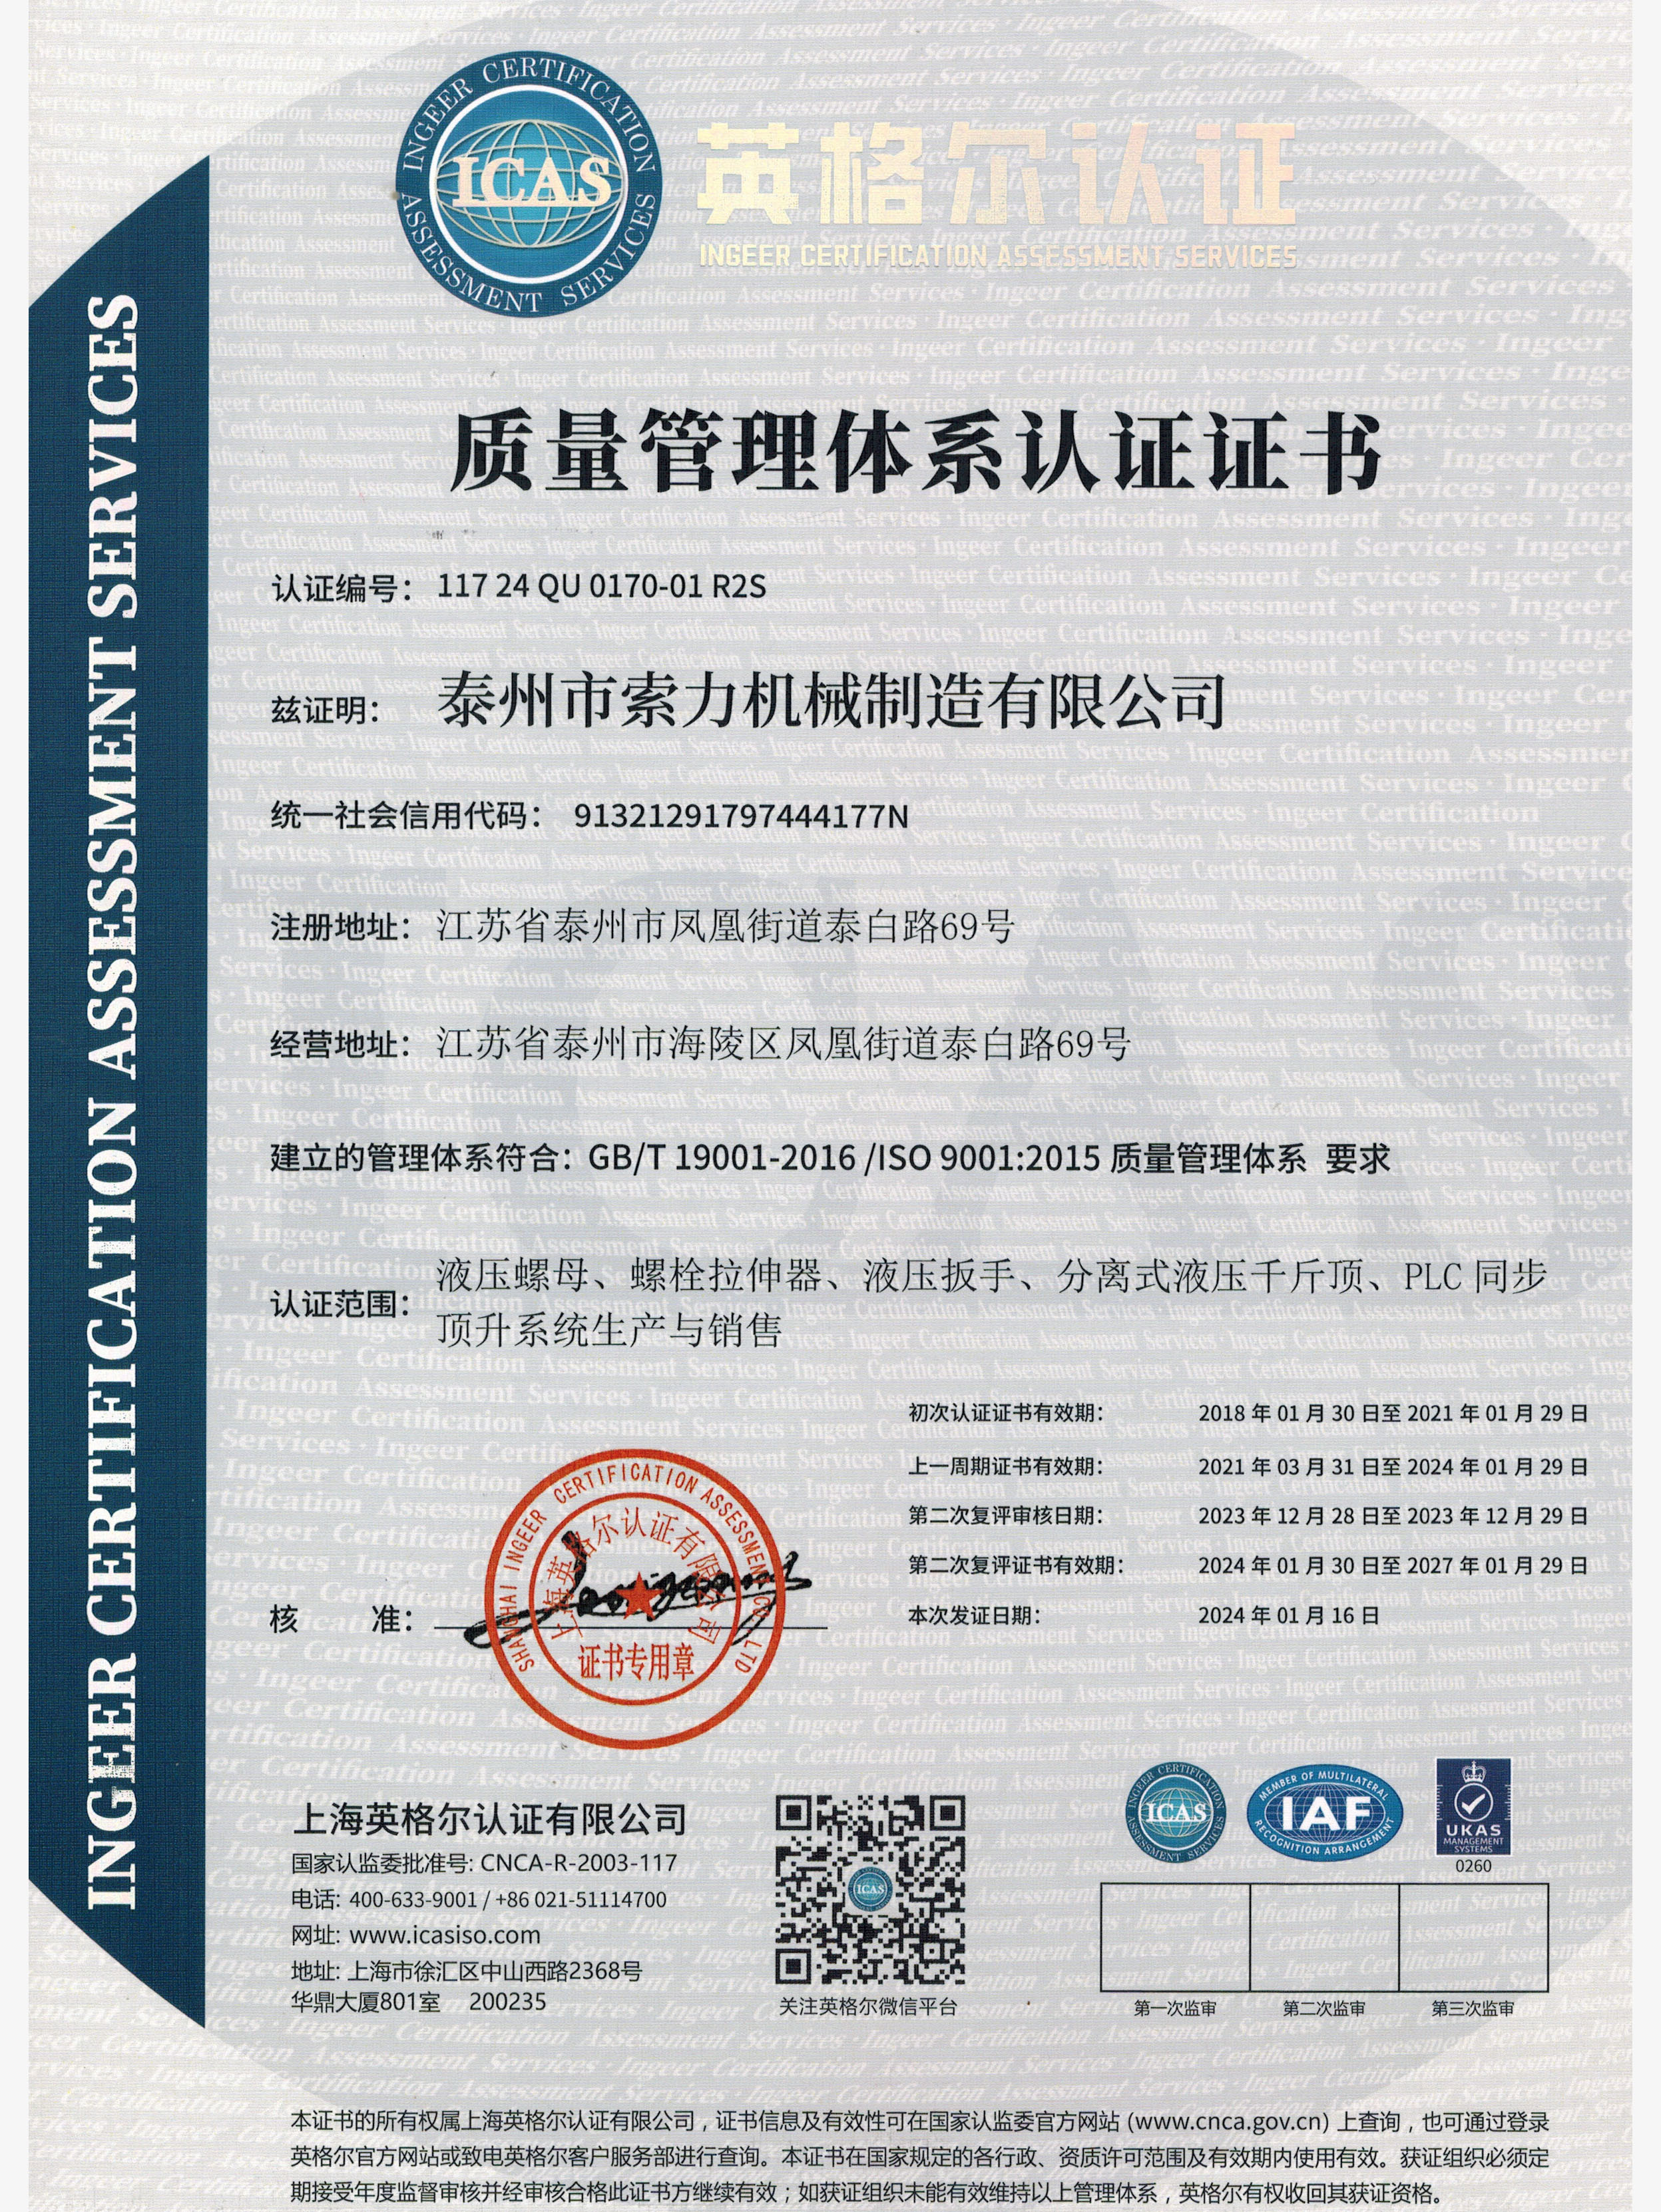 液壓螺母廠家-質量管理體系認證證書中文版